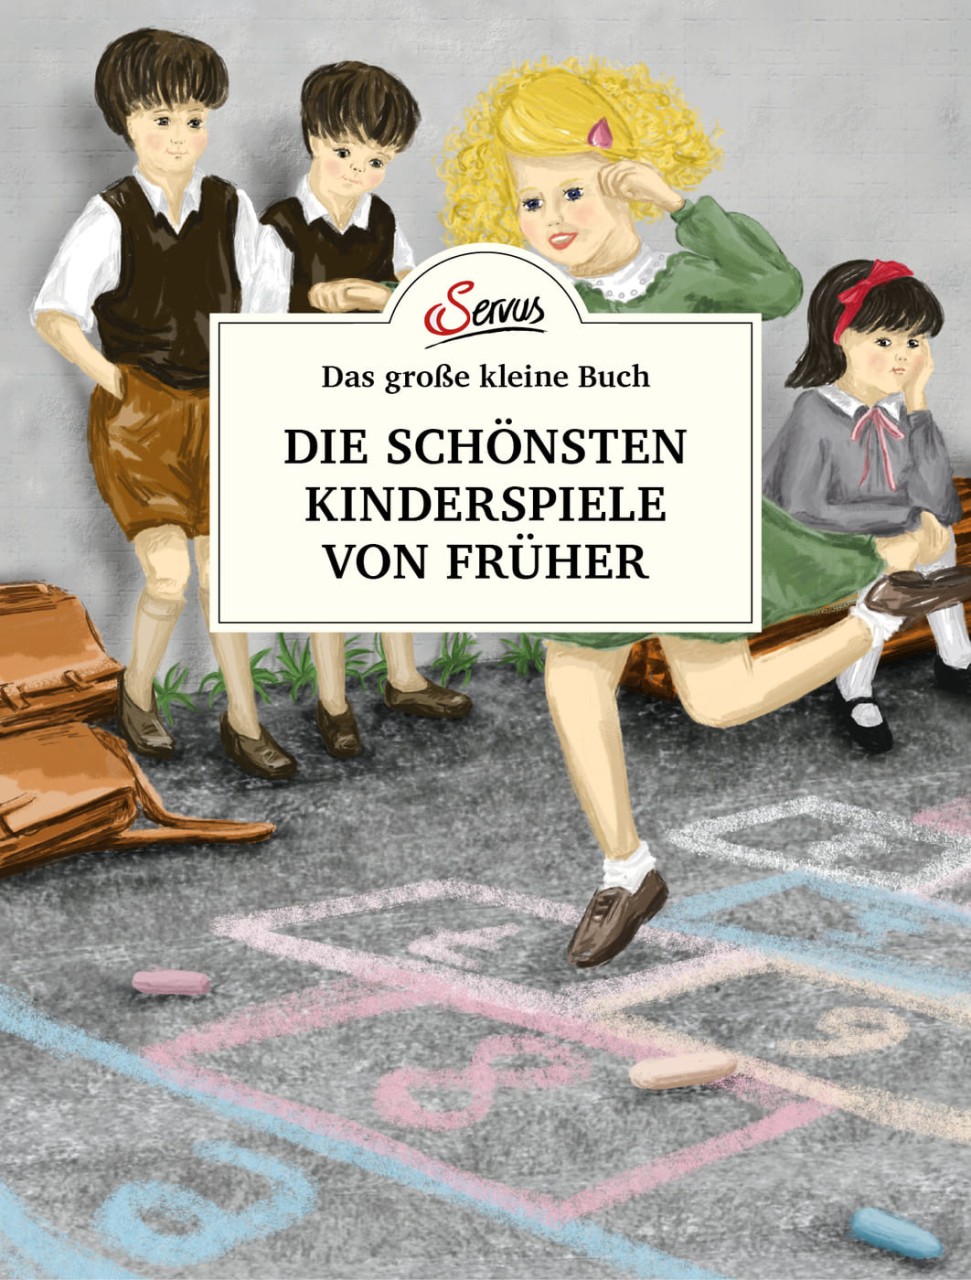 Das große kleine Buch: Die schönsten Kinderspiele von früher von Servus Verlag